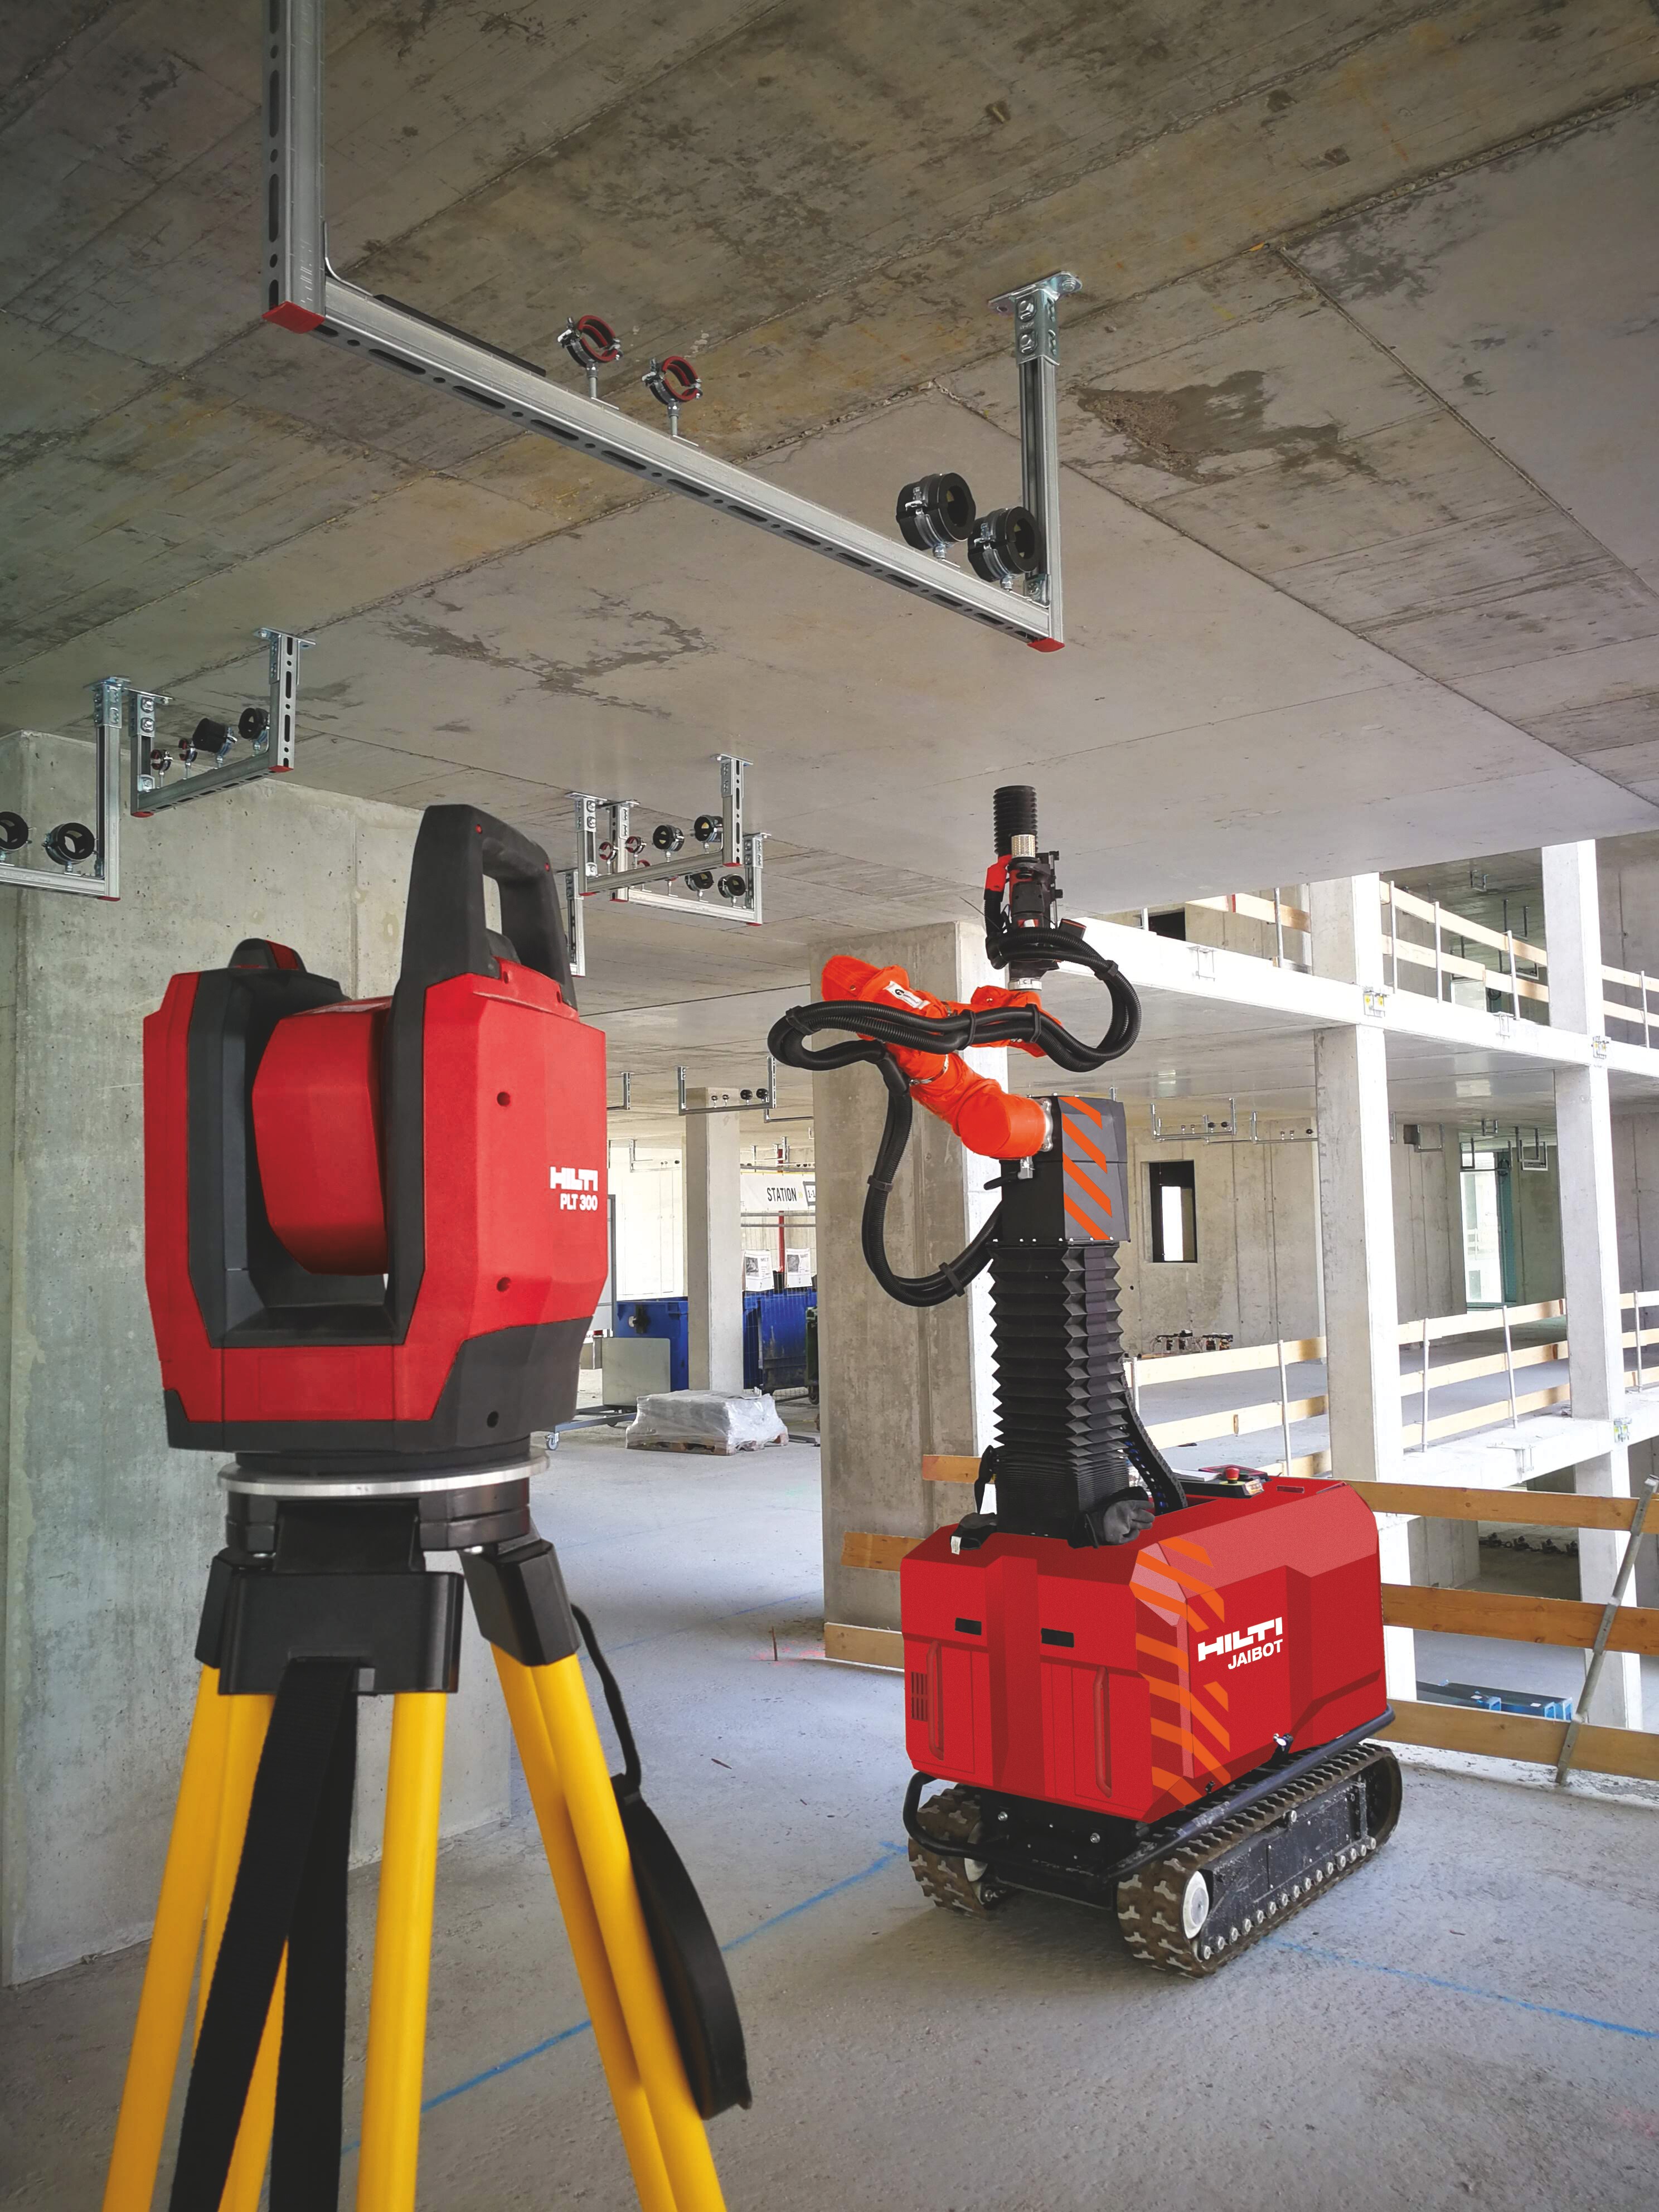 Station totale Hilti PLT 300 et robot de perçage Jaibot sur un chantier de construction pour la pose de supports MEP.